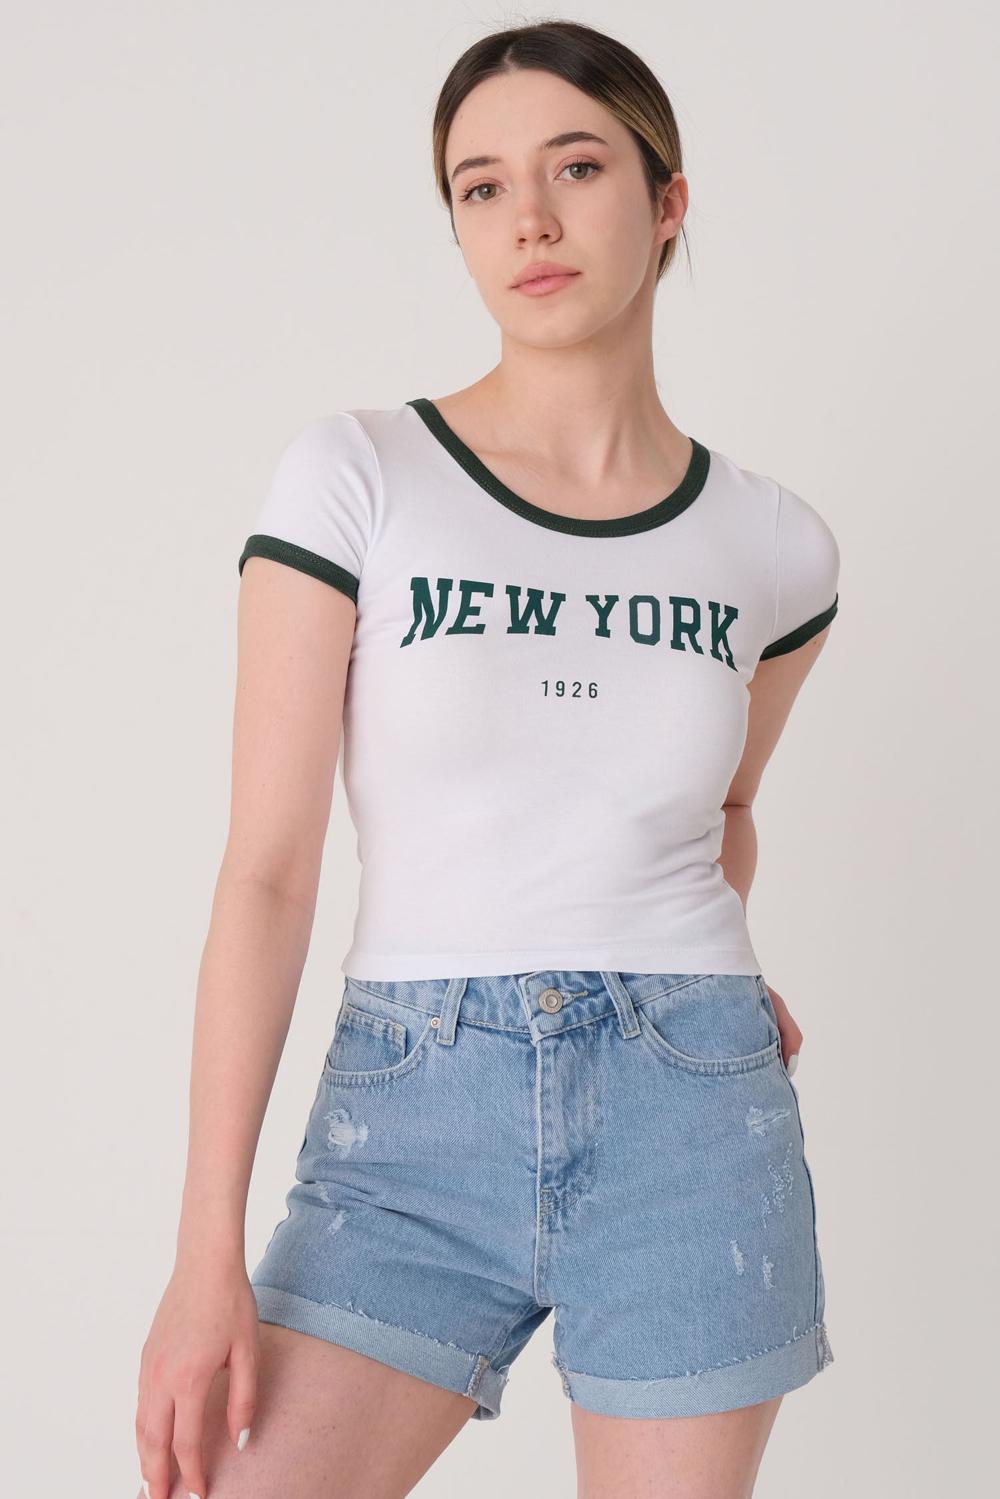  NEW YORK Yazılı T-shirt  